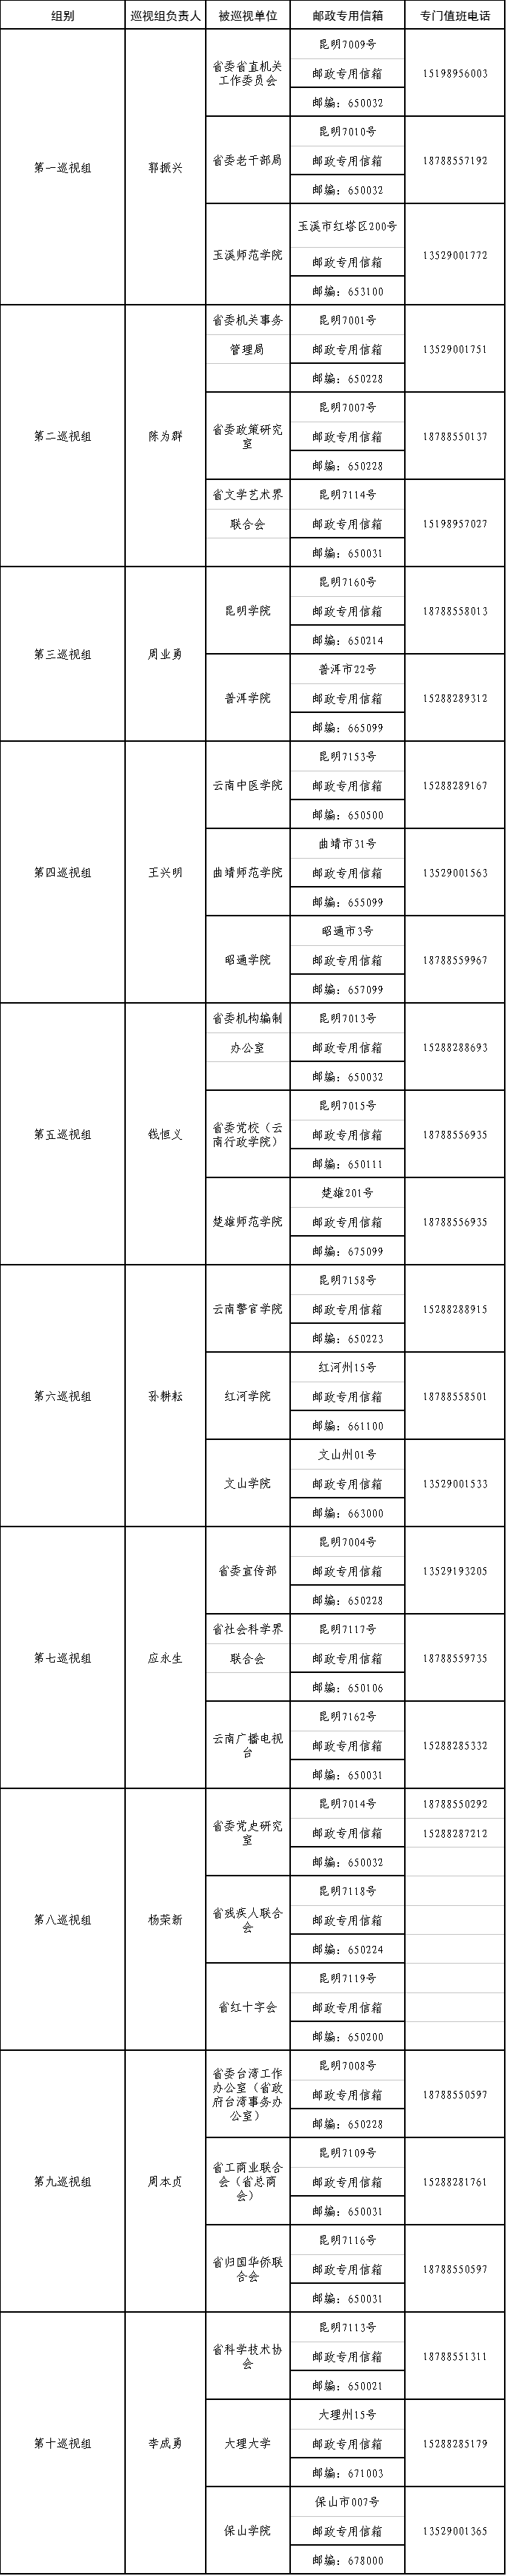 云南:巡视省委宣传部等29个单位 公布电话邮箱